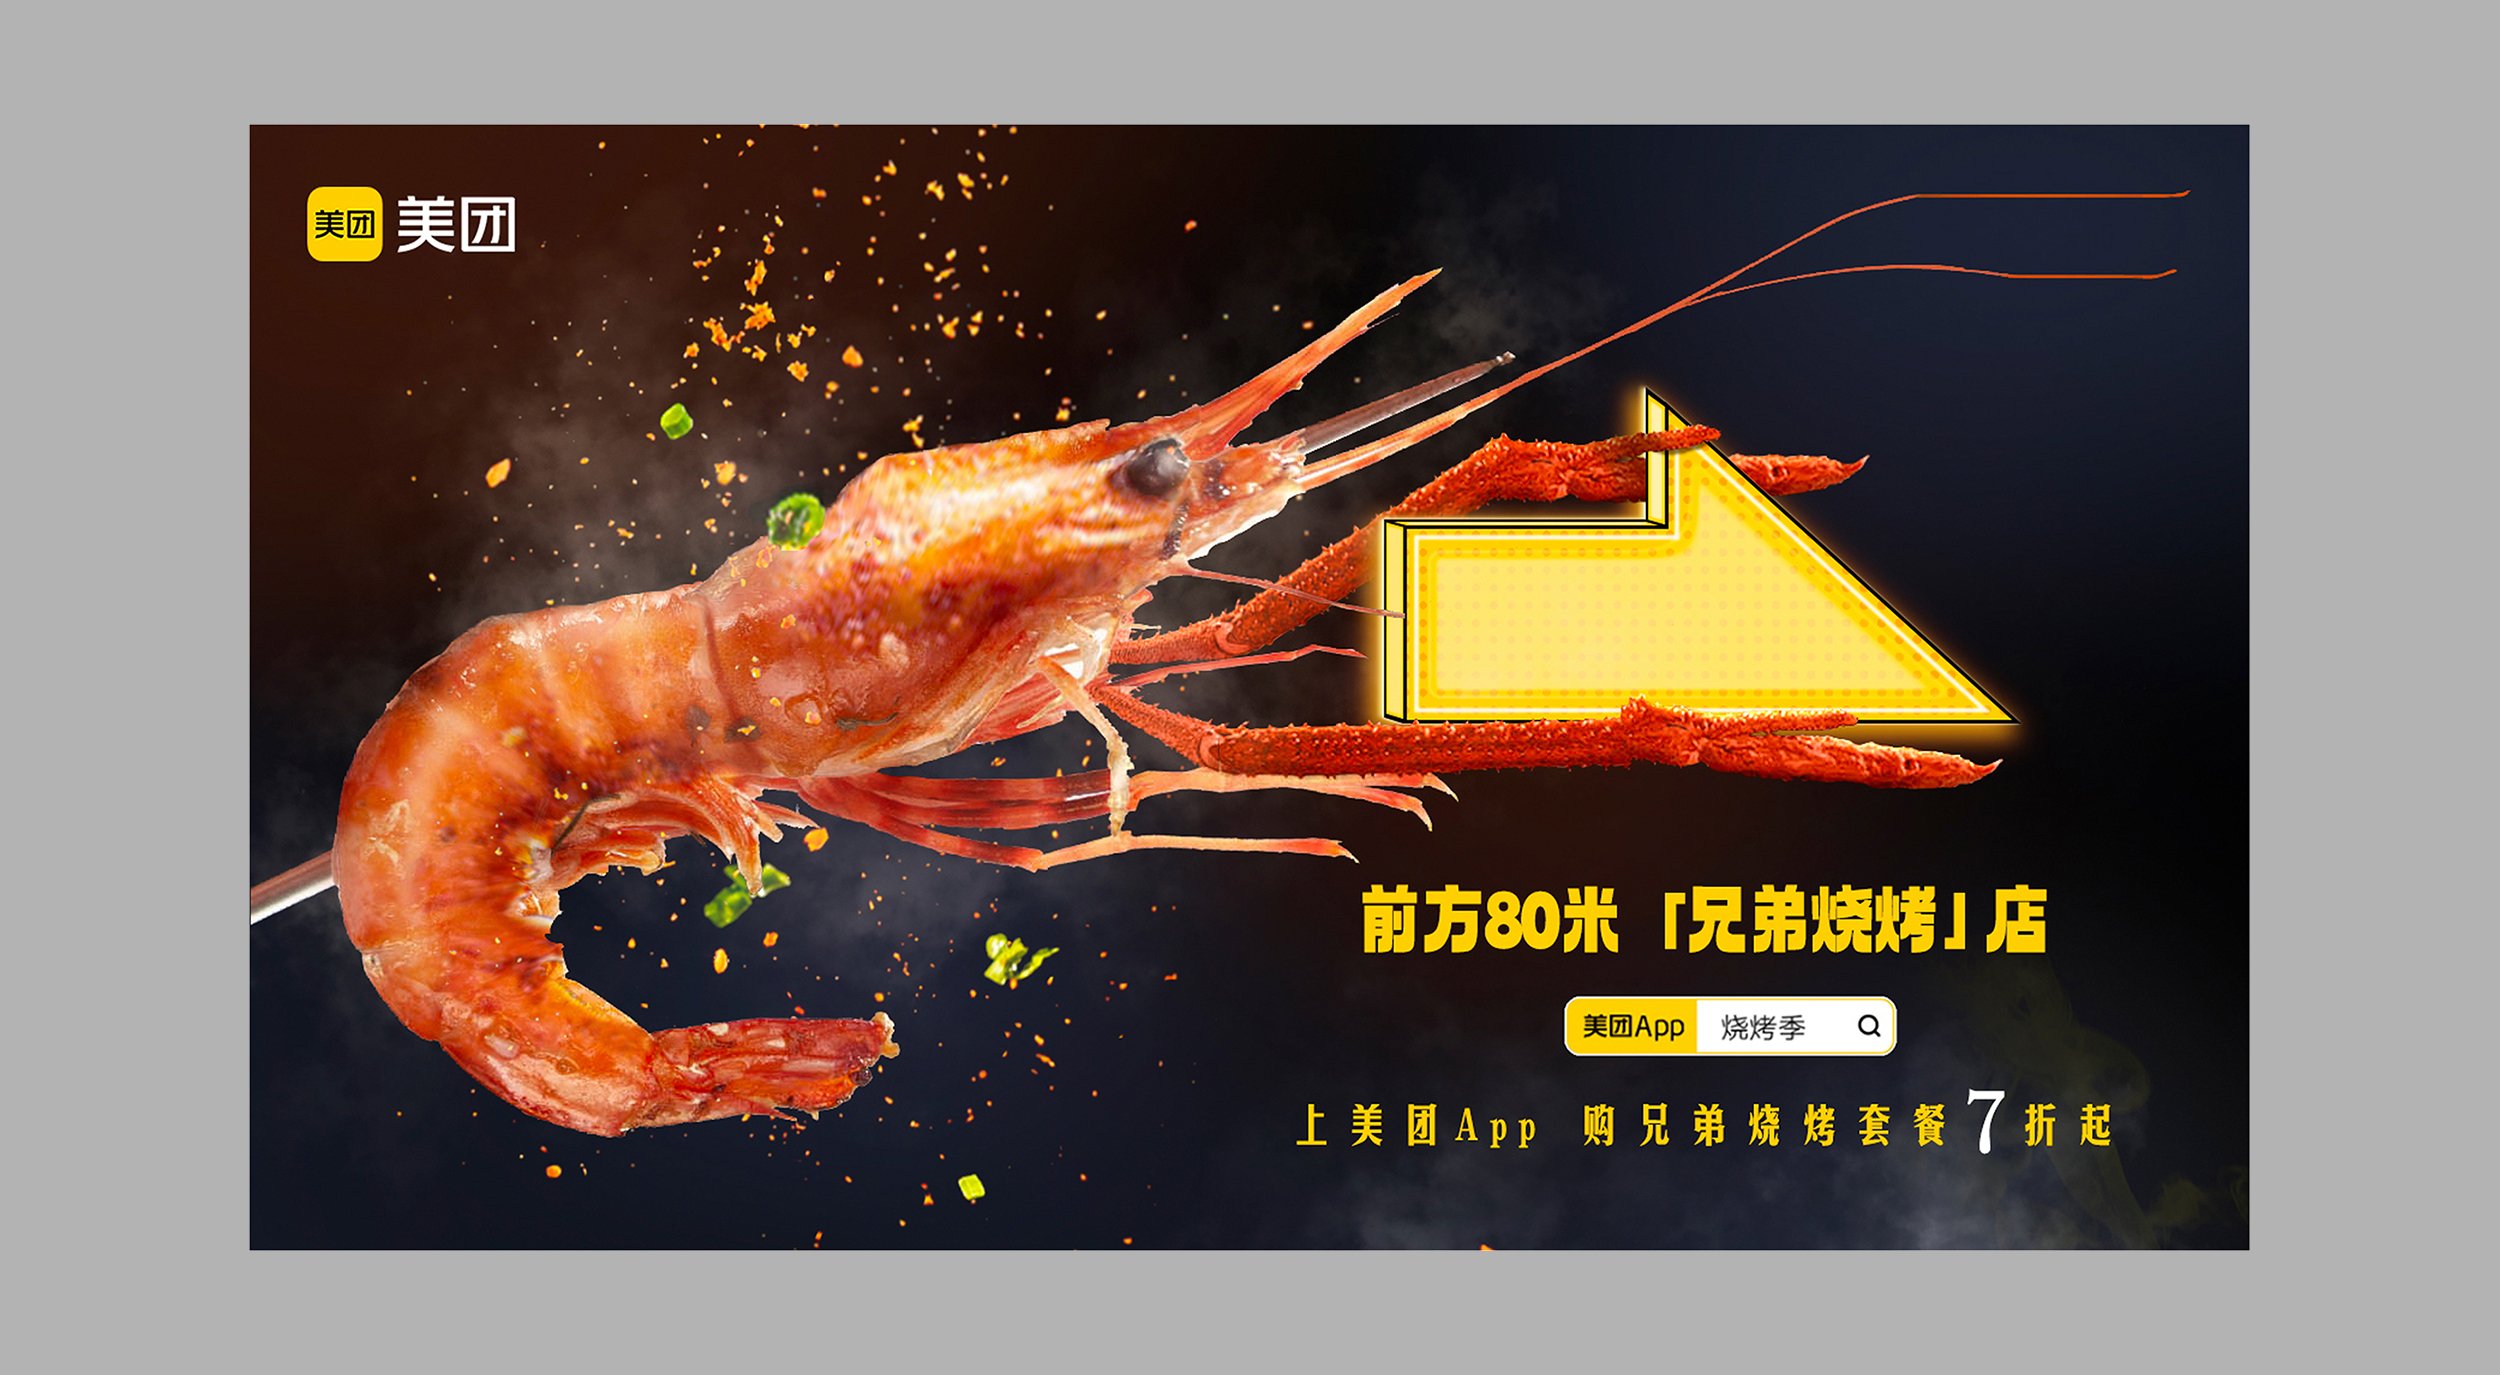 Shrimp_Layout_sRGB2500.jpg